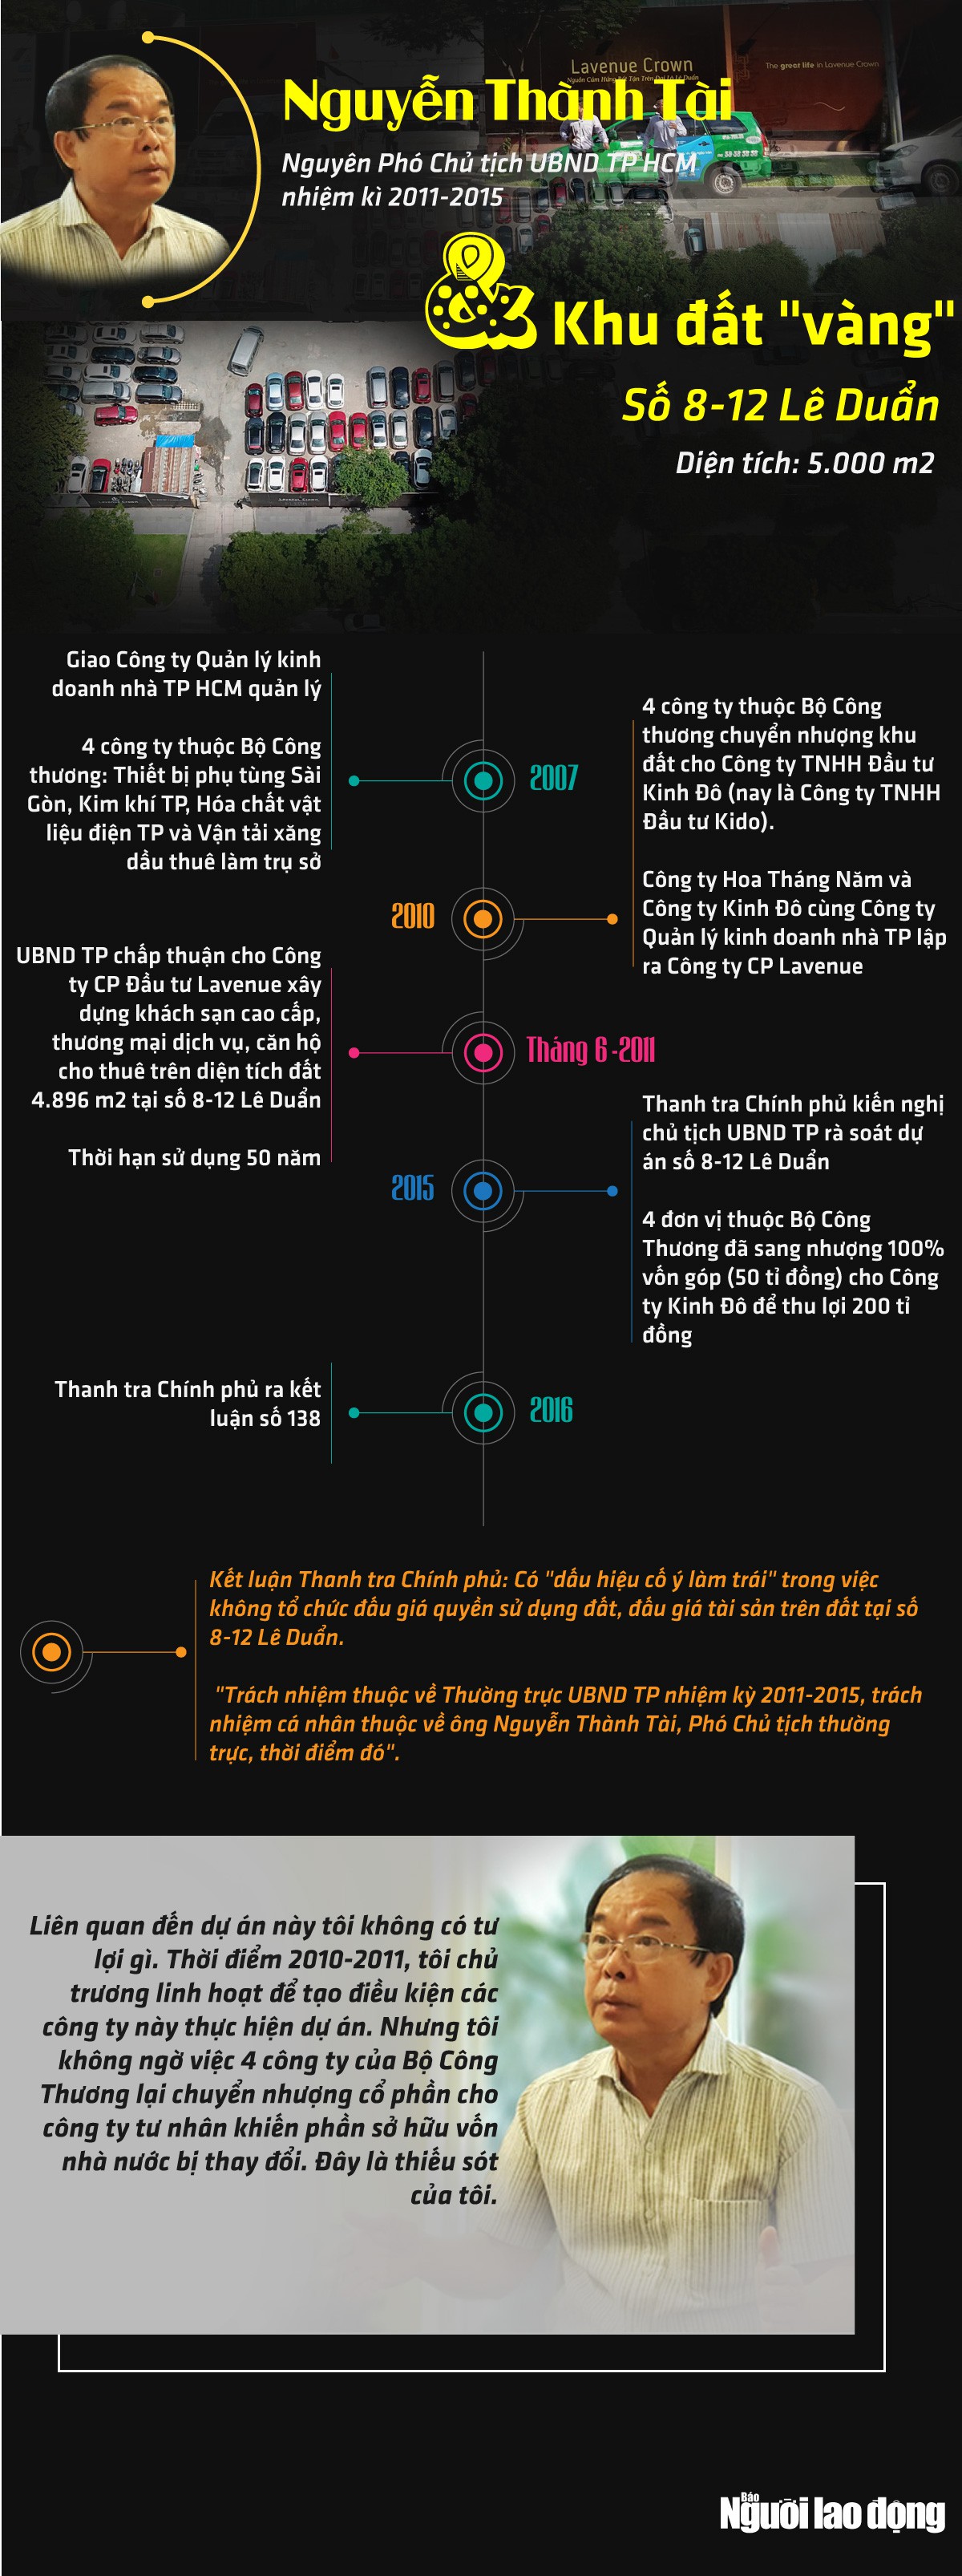 [Infographic] - Ông Nguyễn Thành Tài và khu đất vàng 8-12 Lê Duẩn - Ảnh 1.